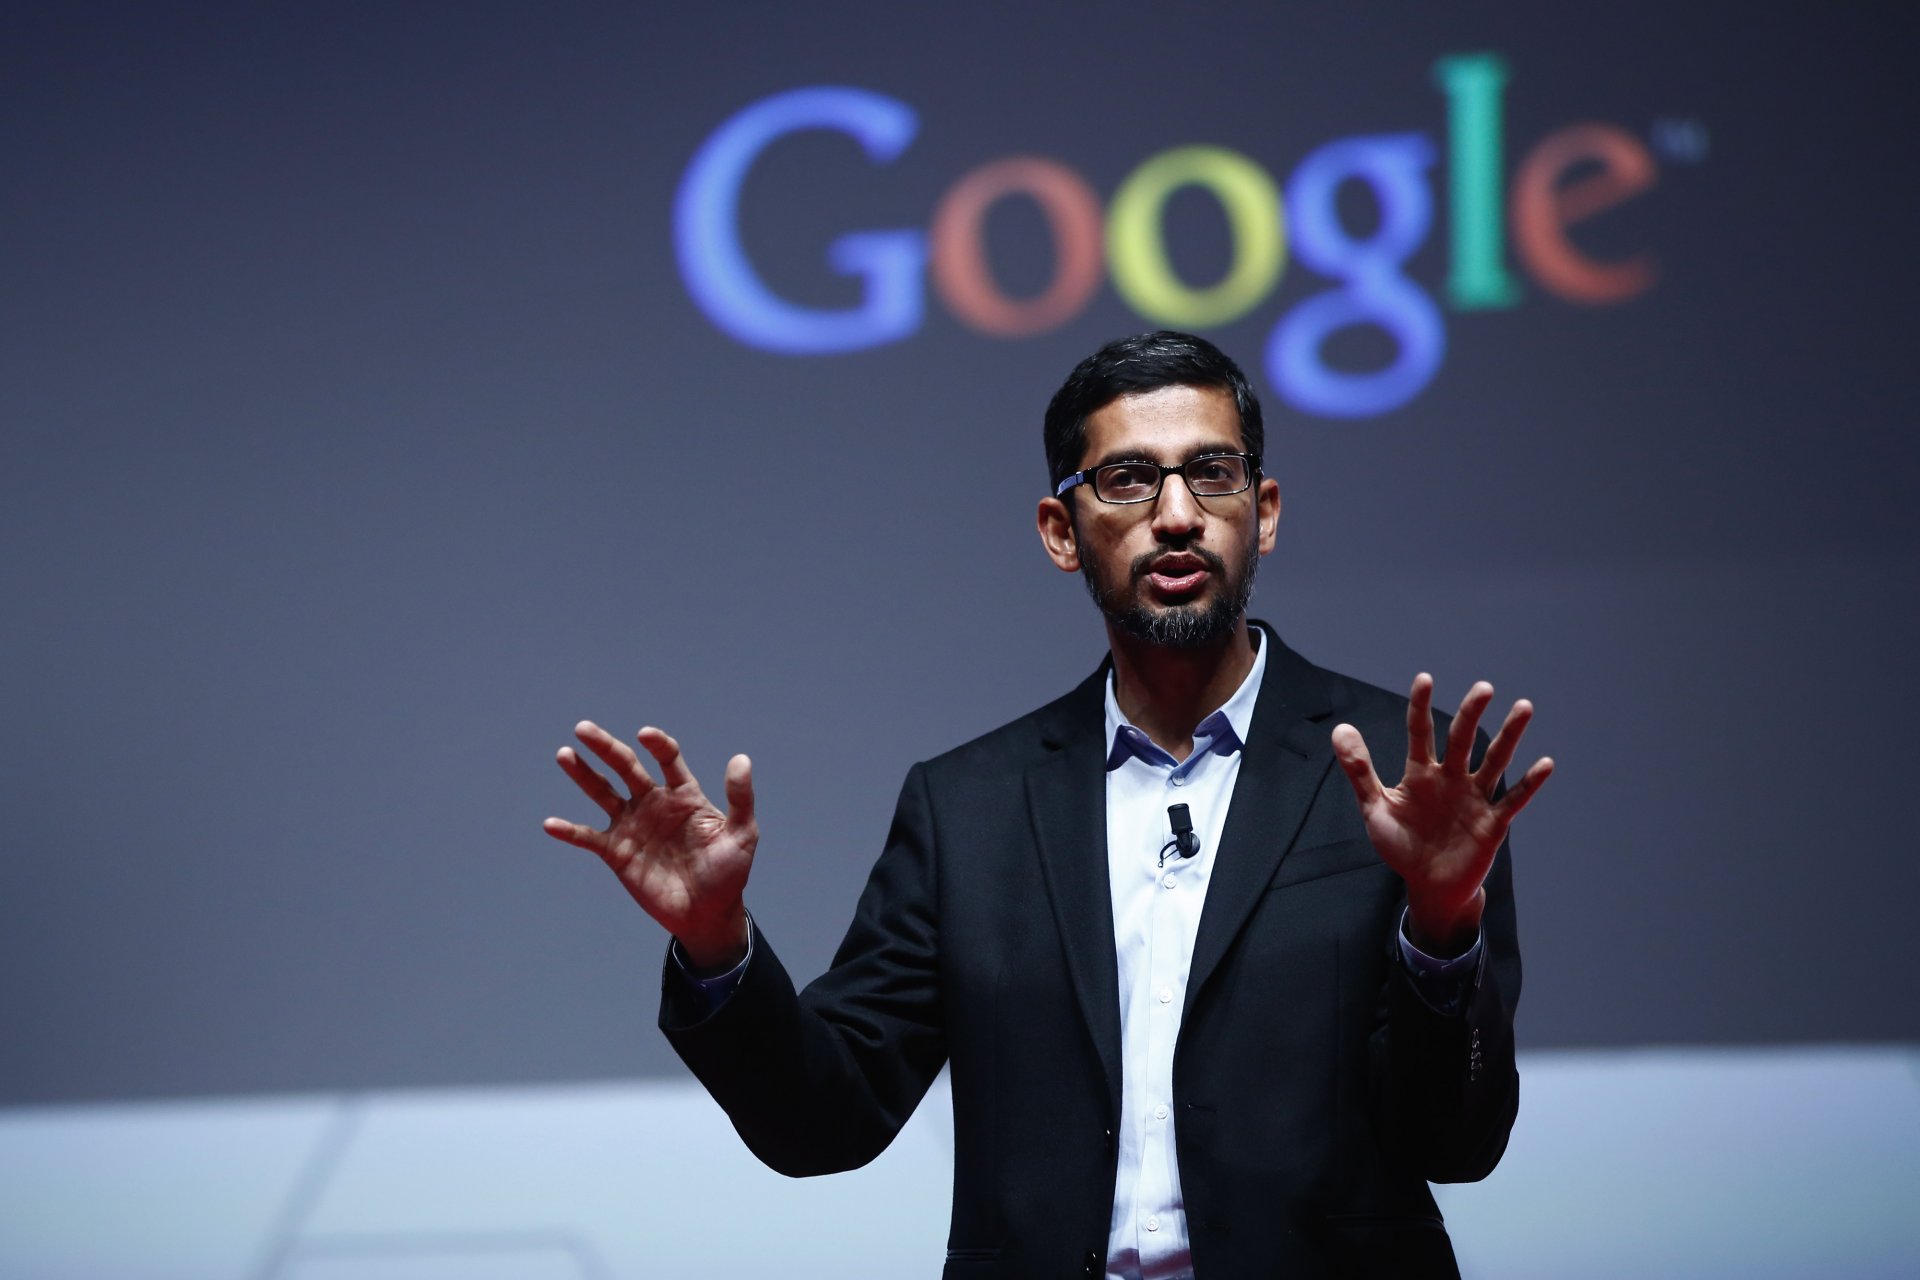 Declaraciones del CEO de Google sobre SGE (Search Generative Experience)